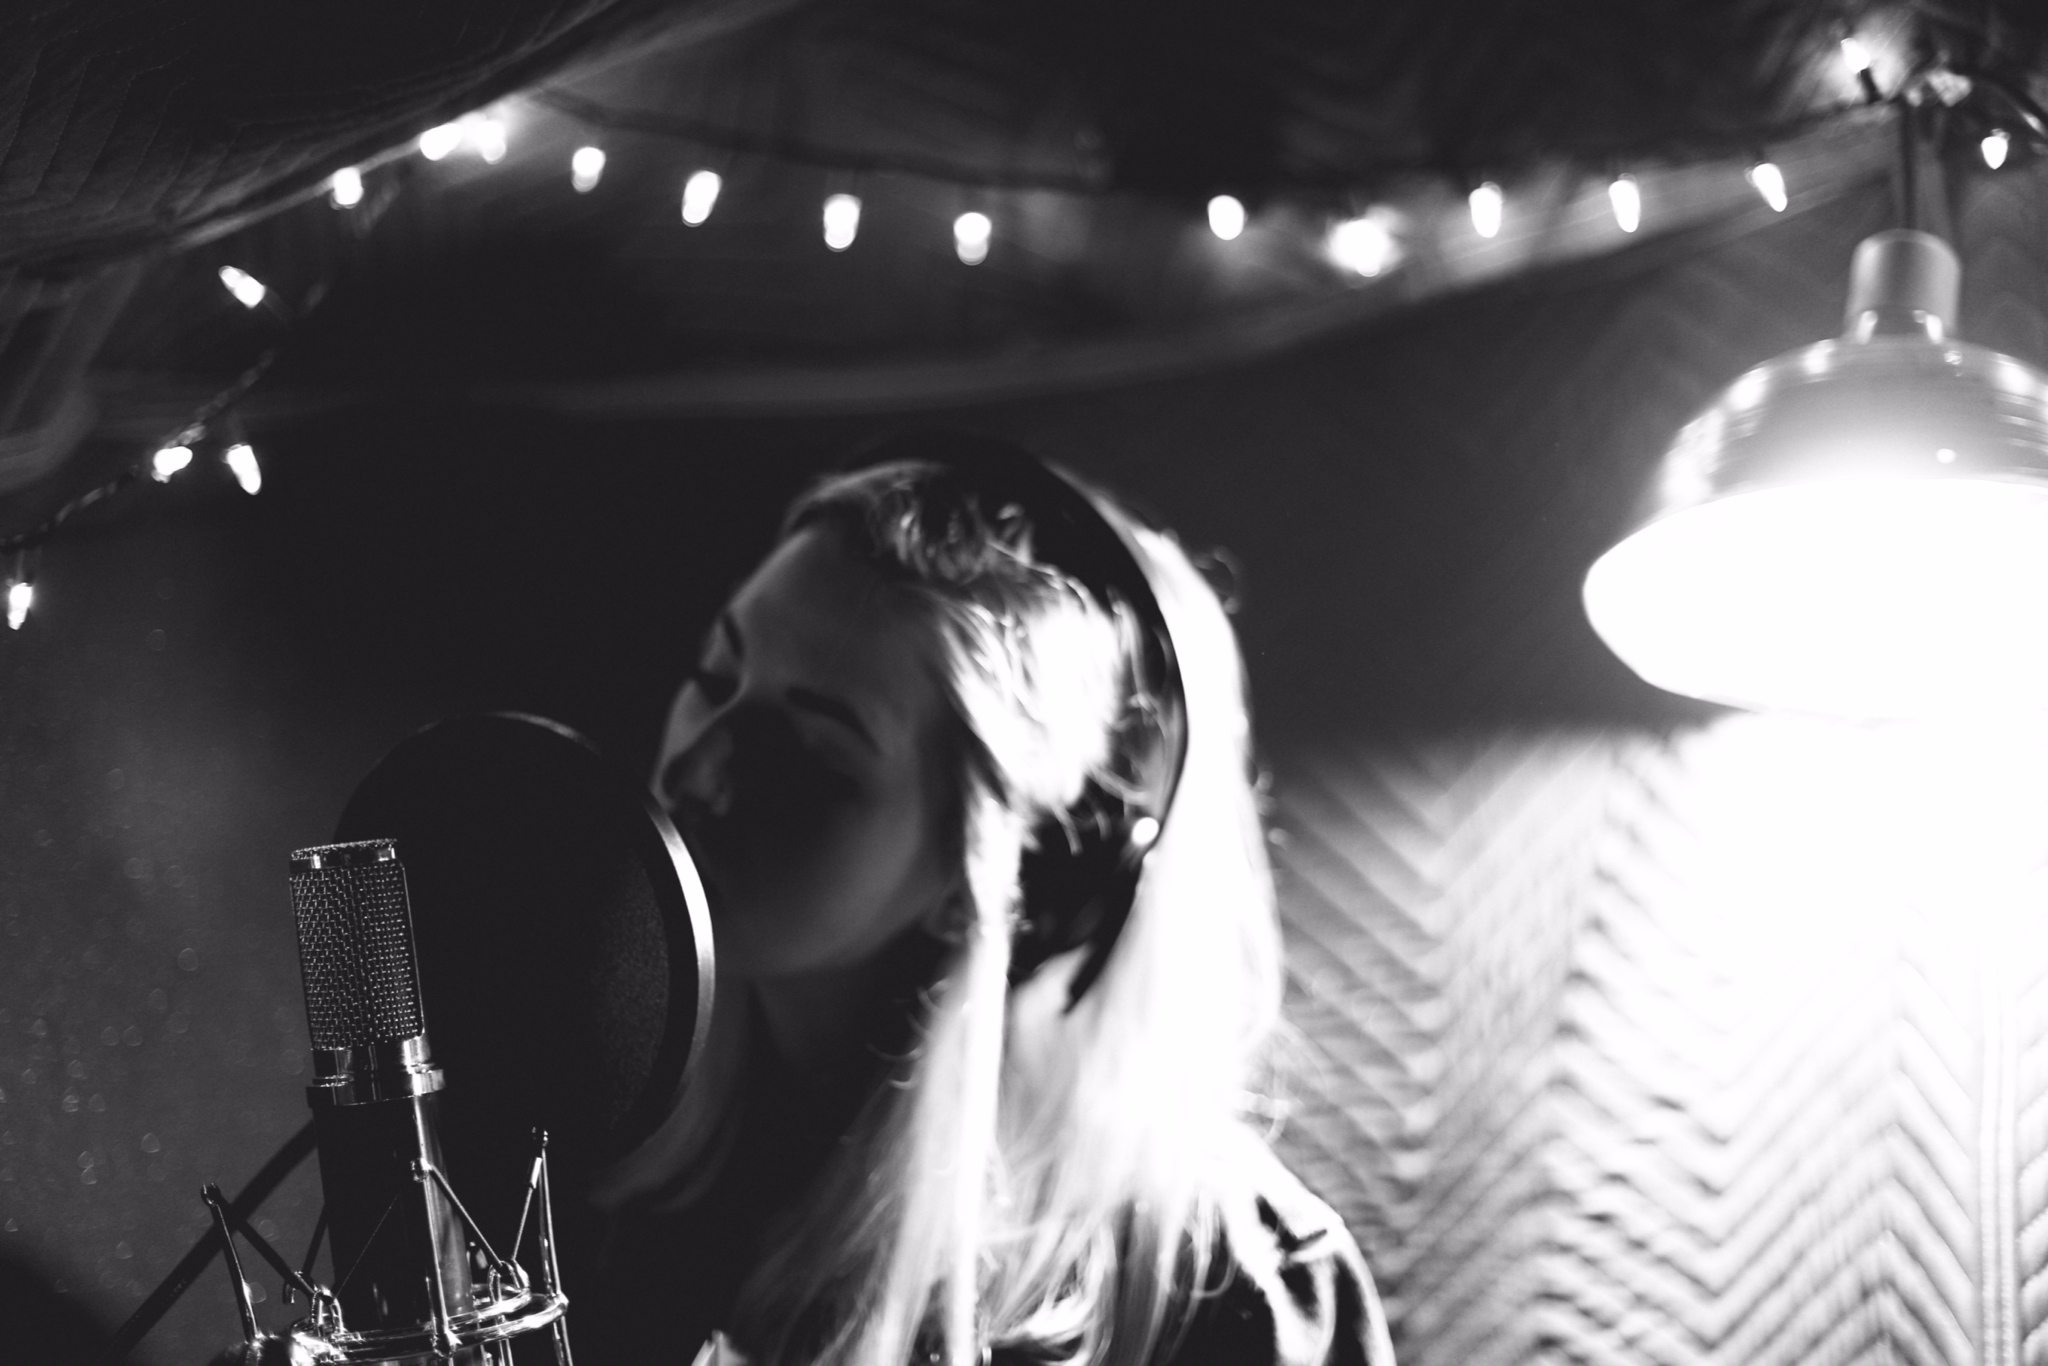 Allison Paige recording vocals in the studio. Photo: Joseph Yee